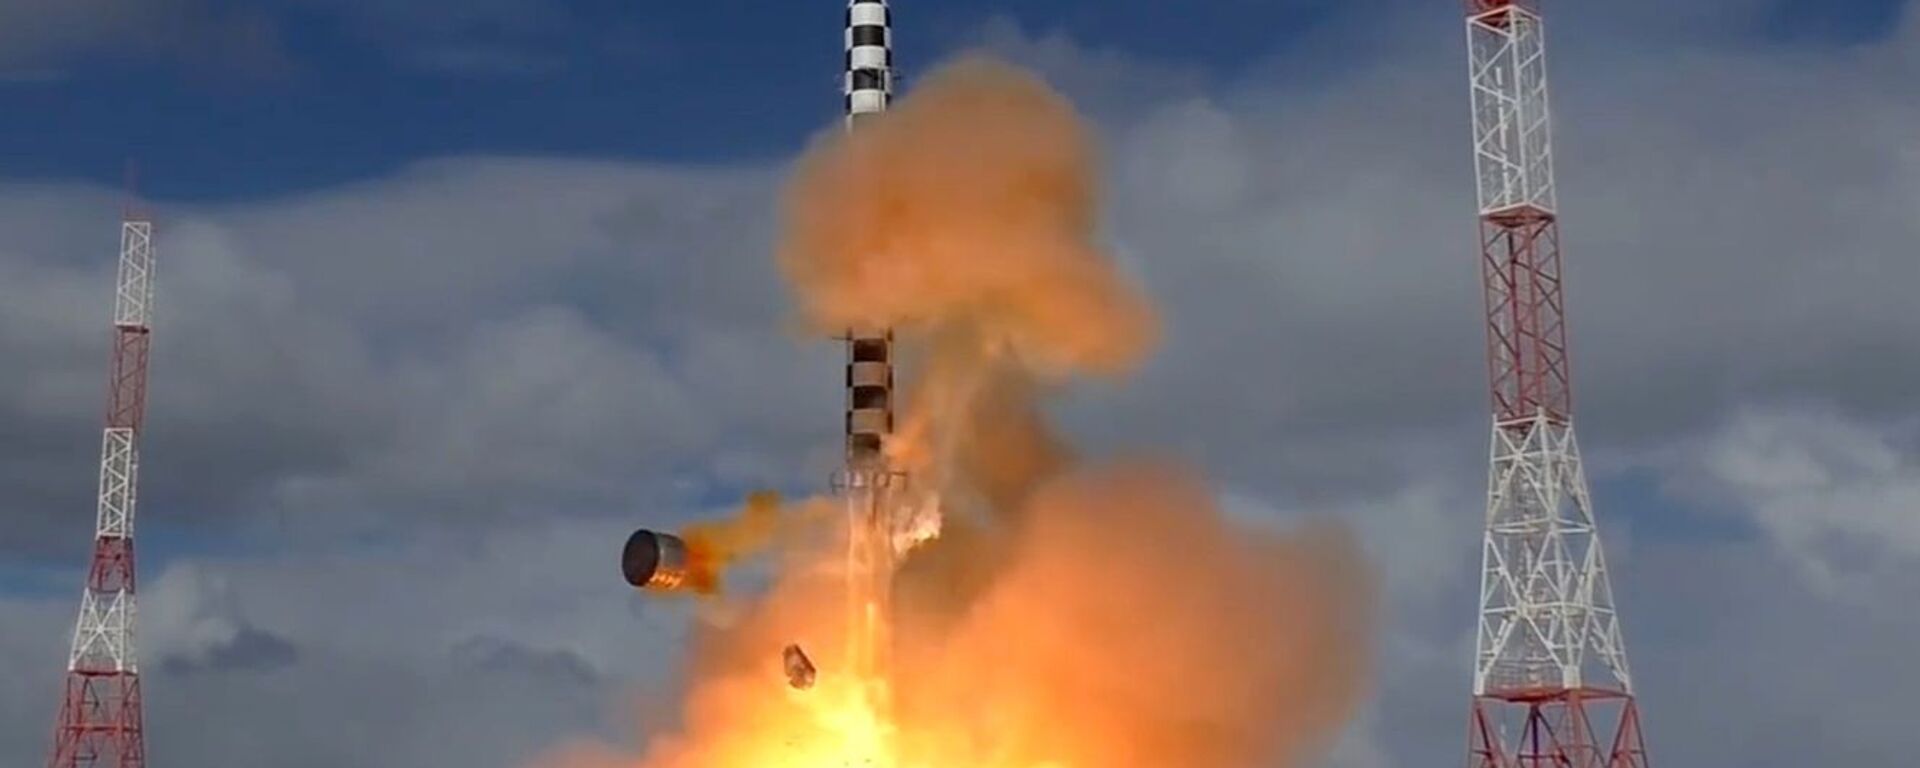 Запуск ракеты «Сармат» с космодрома «Плесецк» - Sputnik Latvija, 1920, 03.04.2021